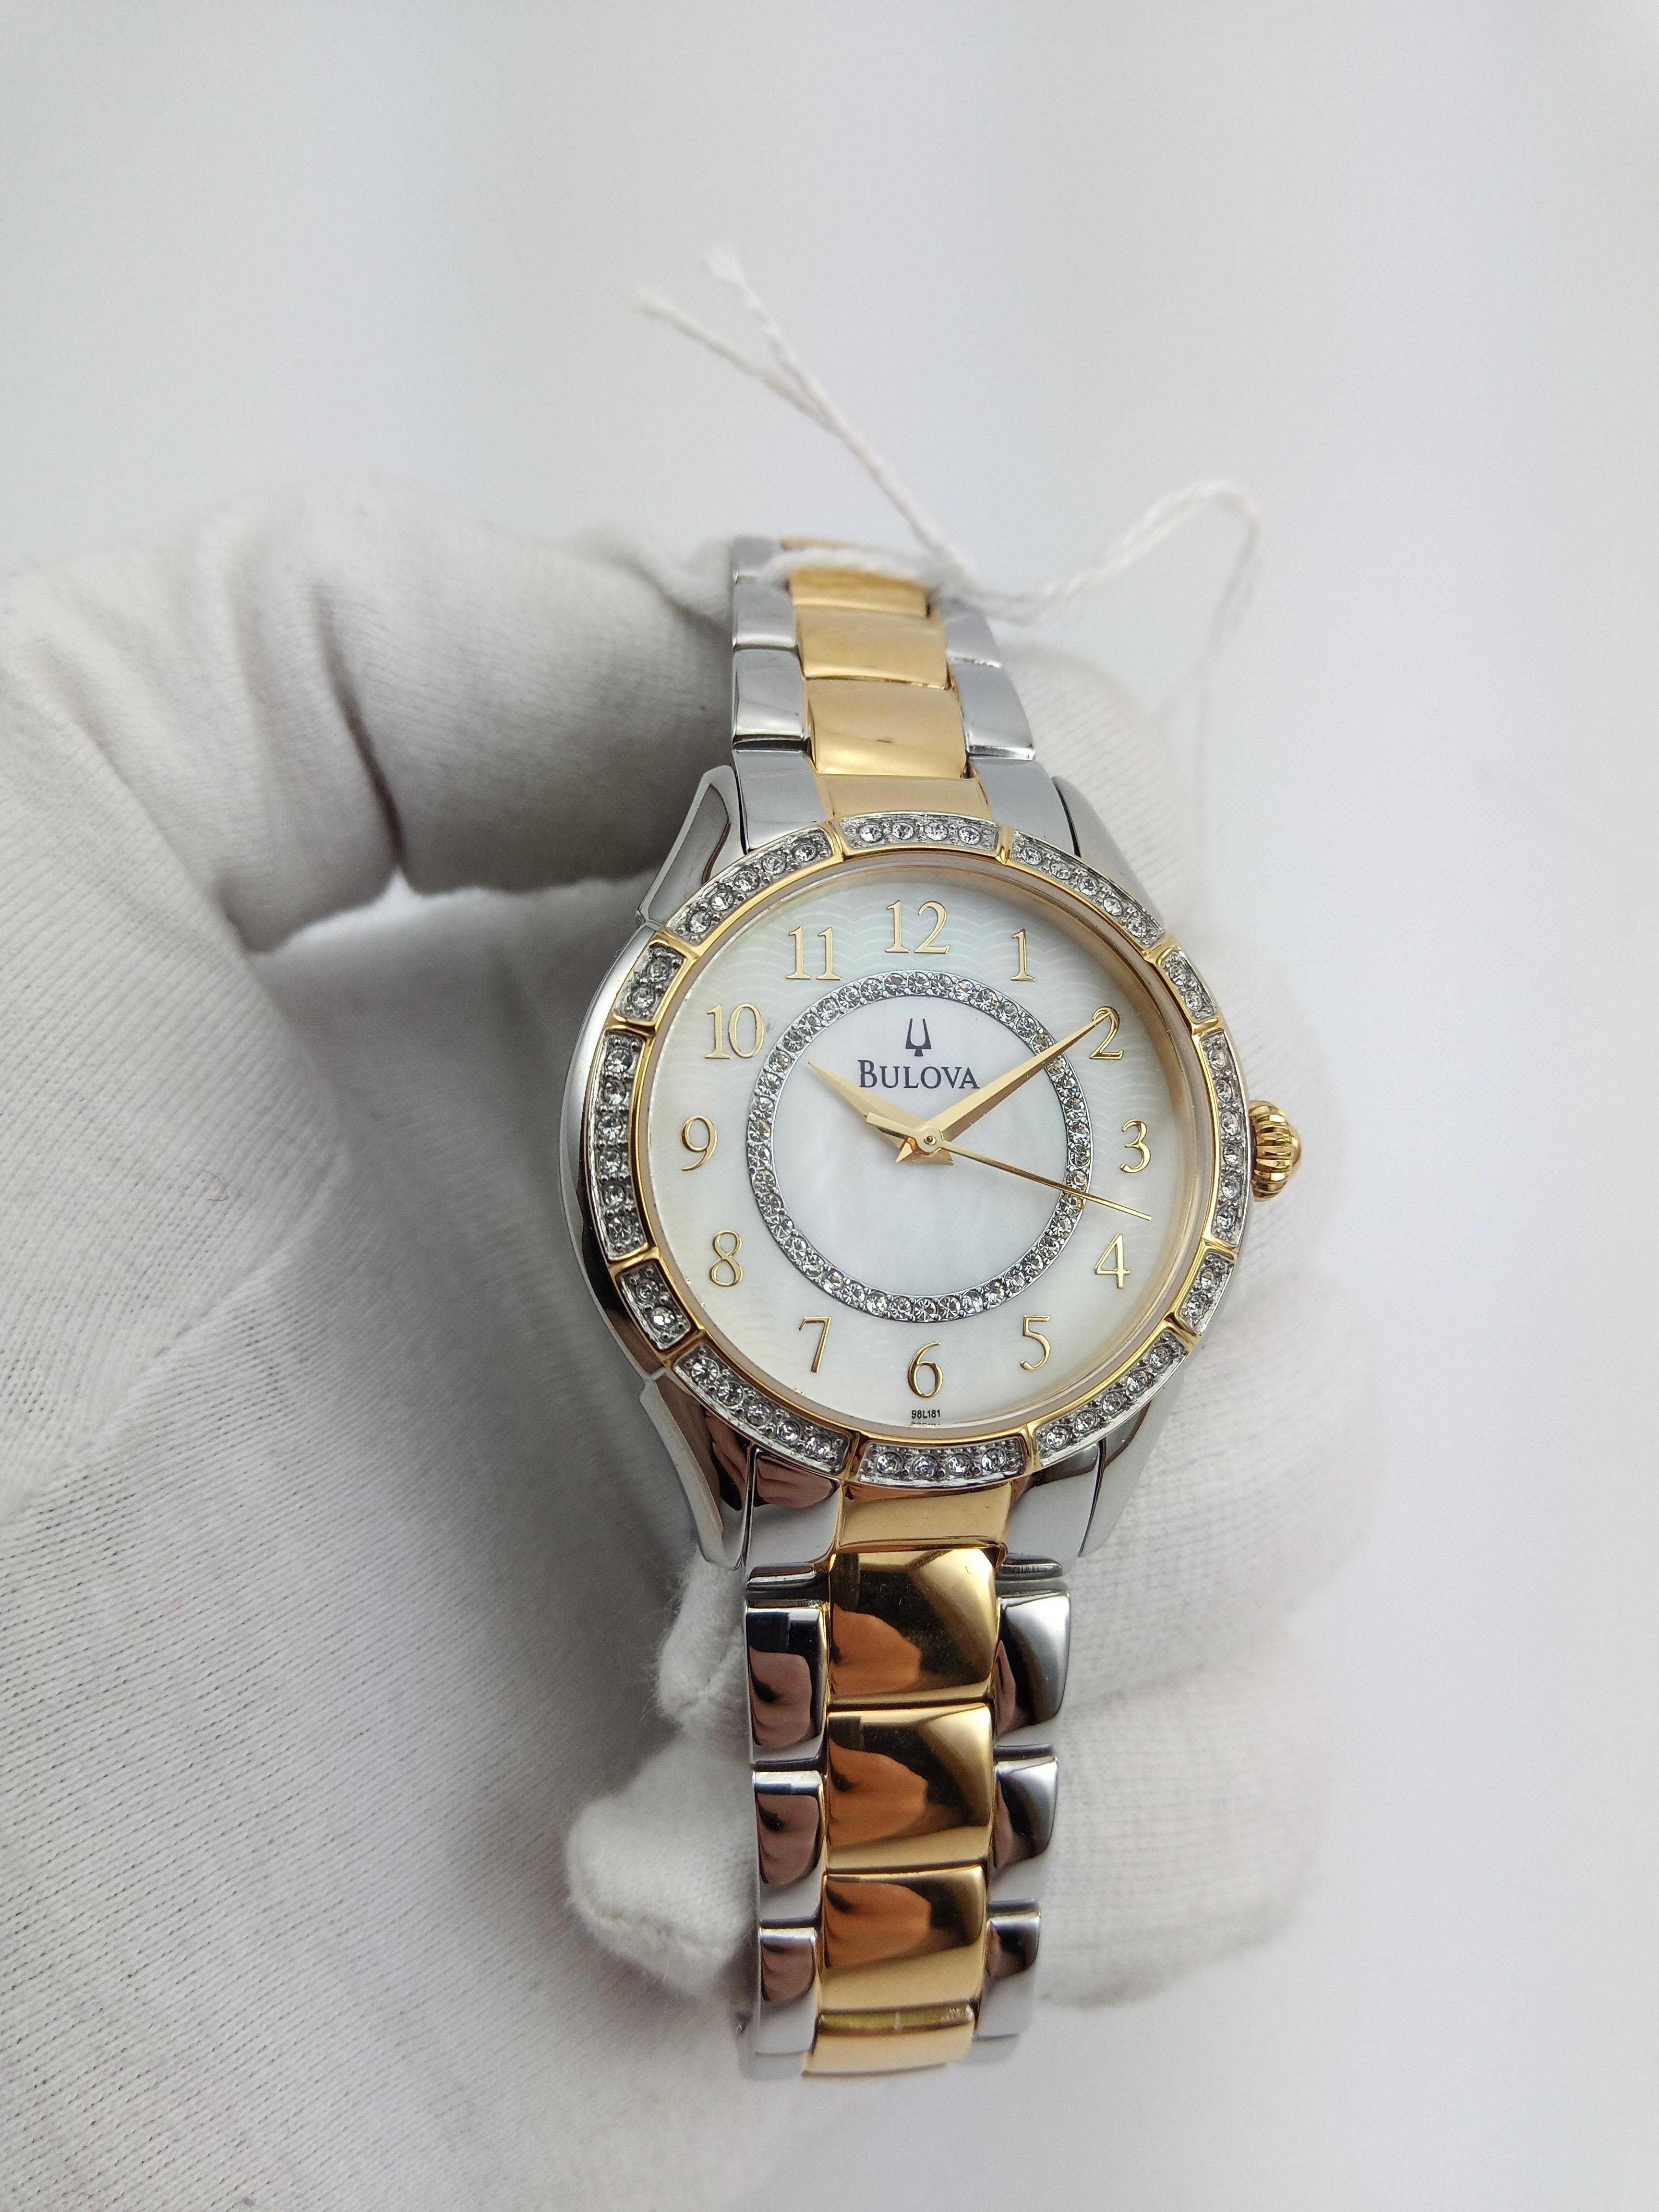 Женские часы Swarovski Bulova 98L181 с перламутровым циферблатом